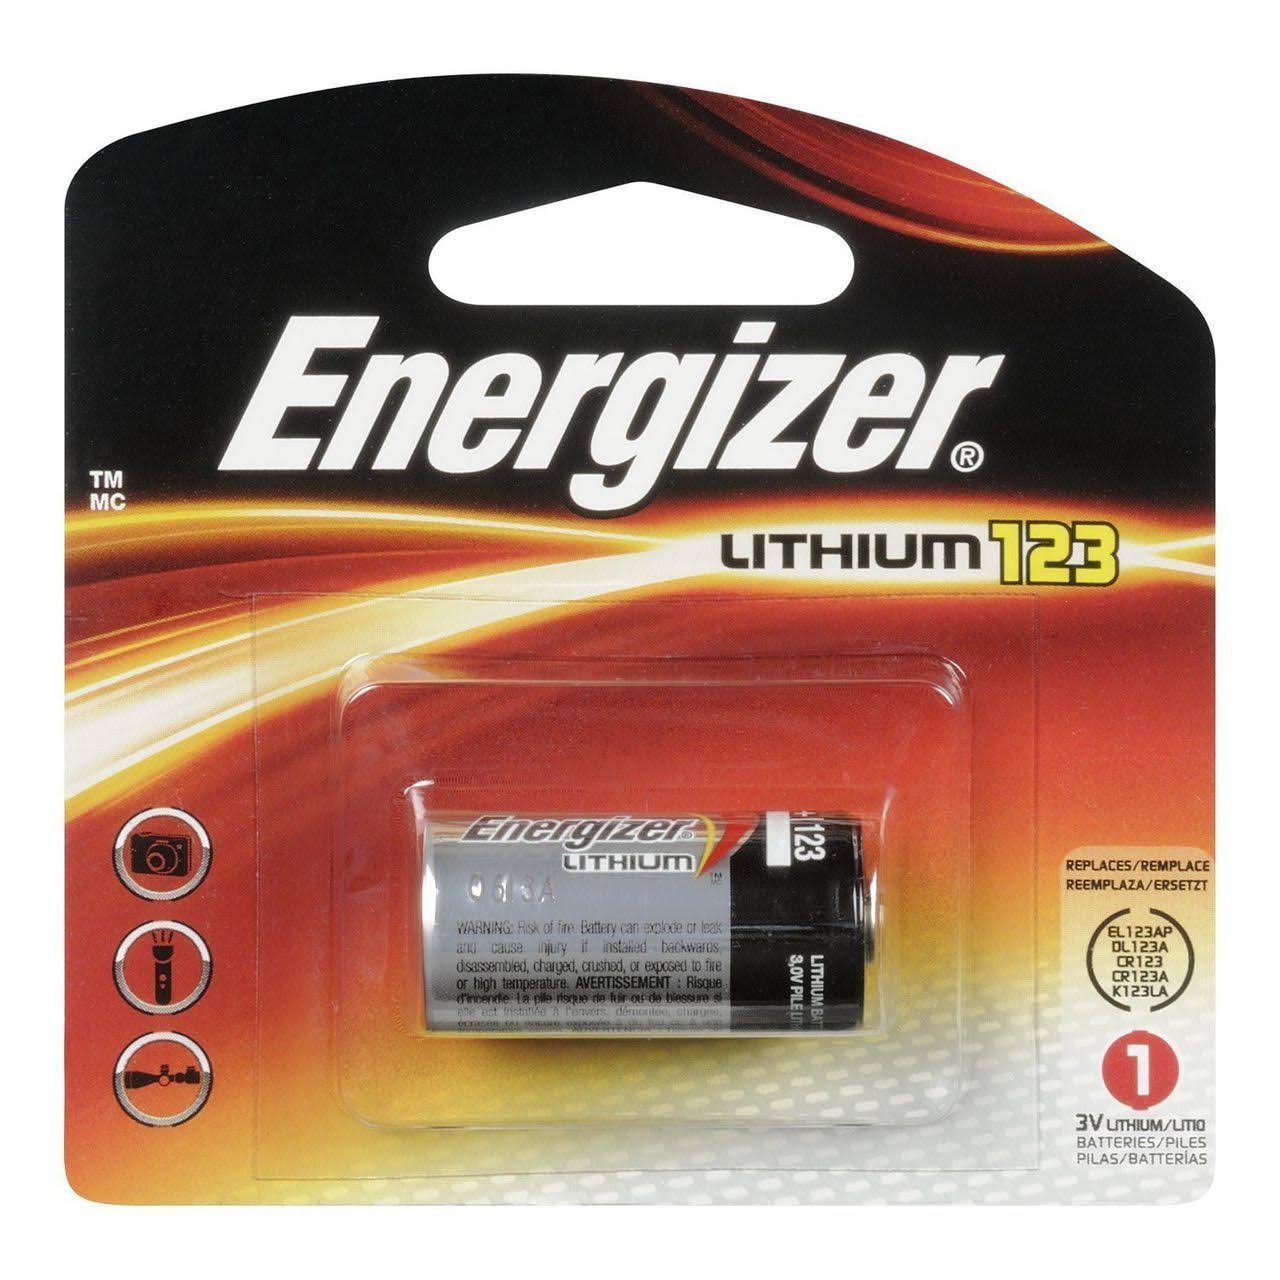 Energizer 123 Lithium Photo Battery - 3V